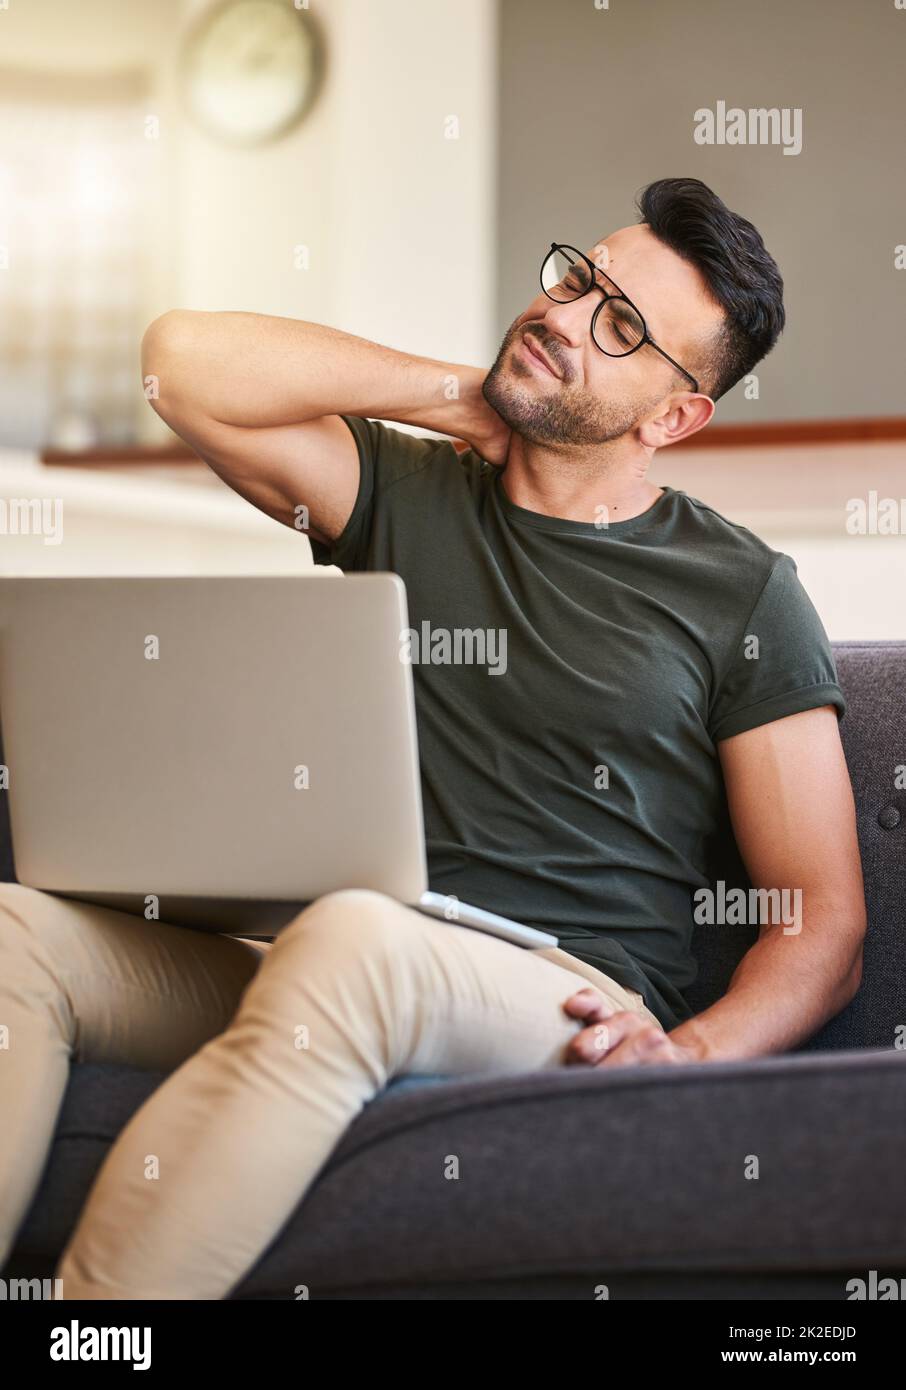 Ich denke, ich sitze vielleicht zu lange. Aufnahme eines hübschen jungen Mannes, der bei der Arbeit am Laptop zu Hause unter Nackenschmerzen leidet. Stockfoto